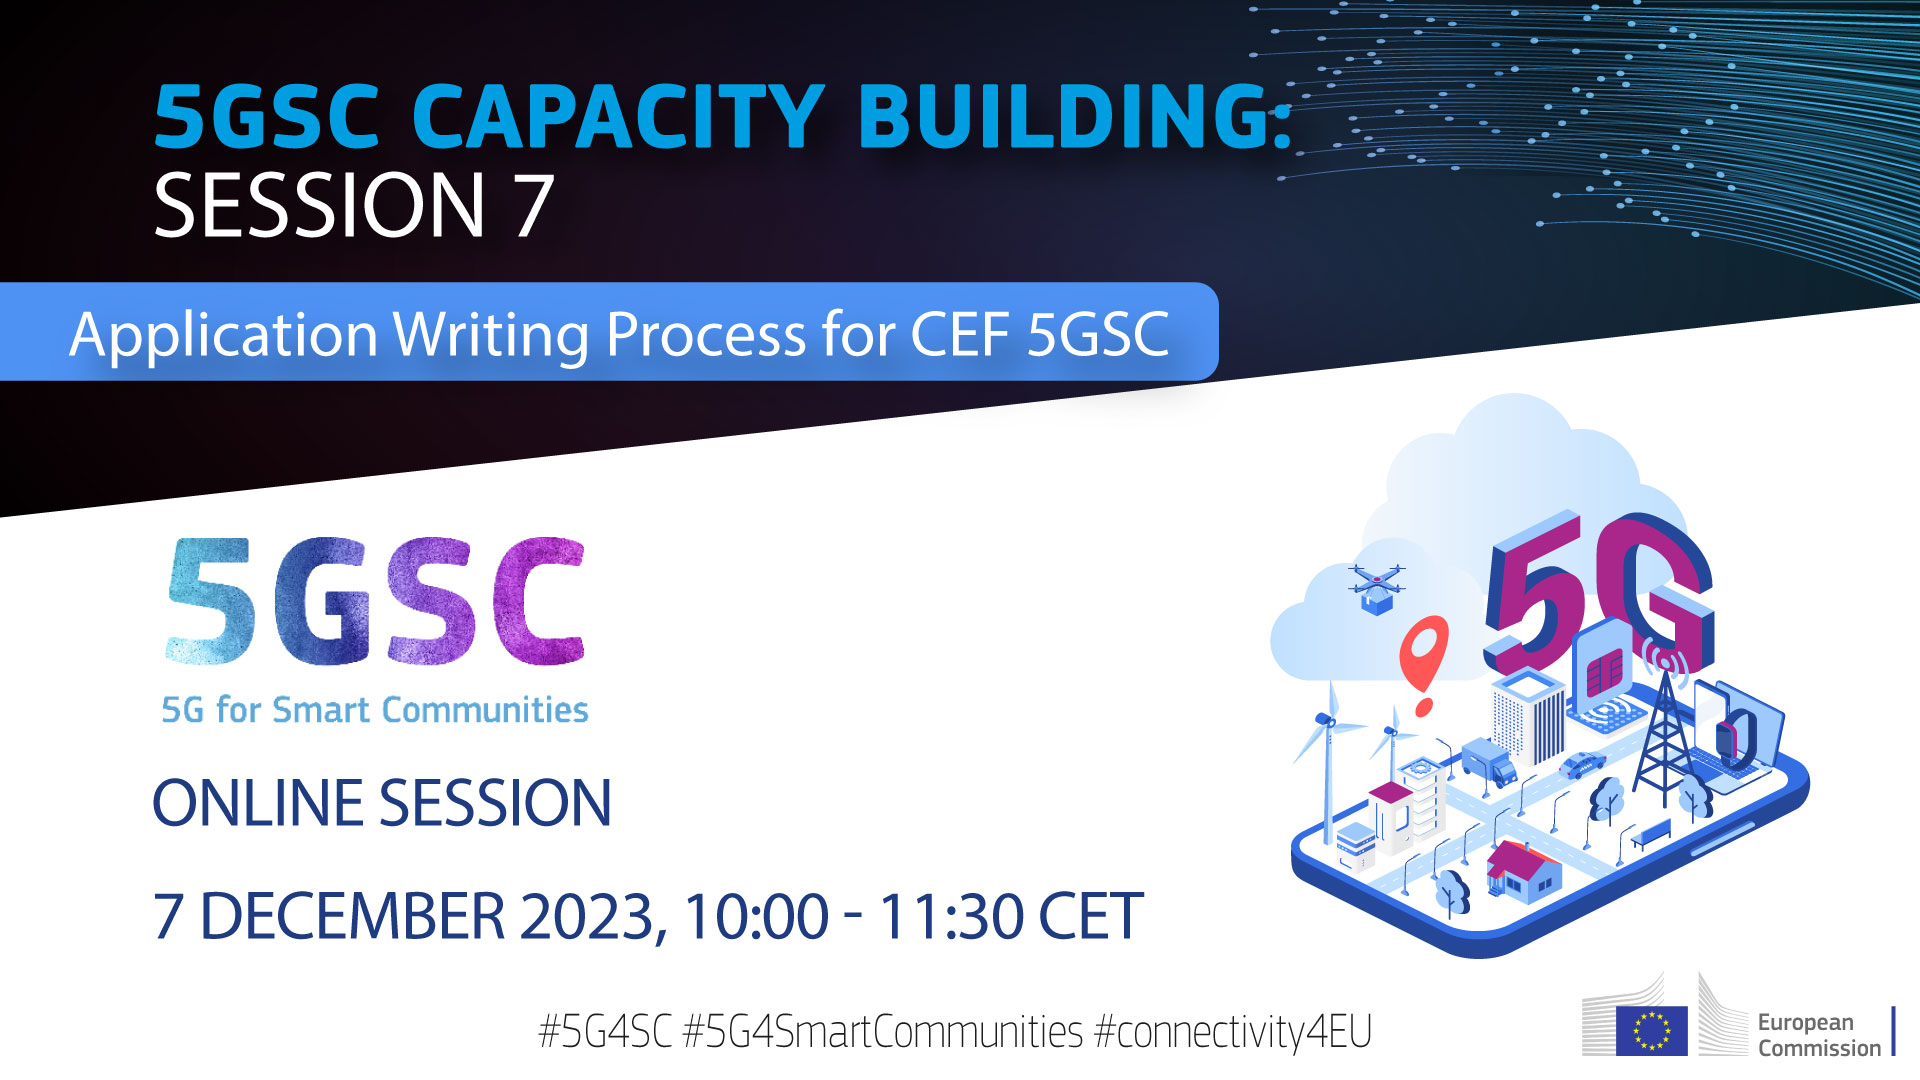 plakat događanja s tekstom Platforma za potporu 5GSC-u sa zadovoljstvom vas poziva na predstojeću 7. sesiju izgradnje kapaciteta 5GSC-a „Upravljanje aplikacijama za CEF 5GSC” i datum/vrijeme događanja.